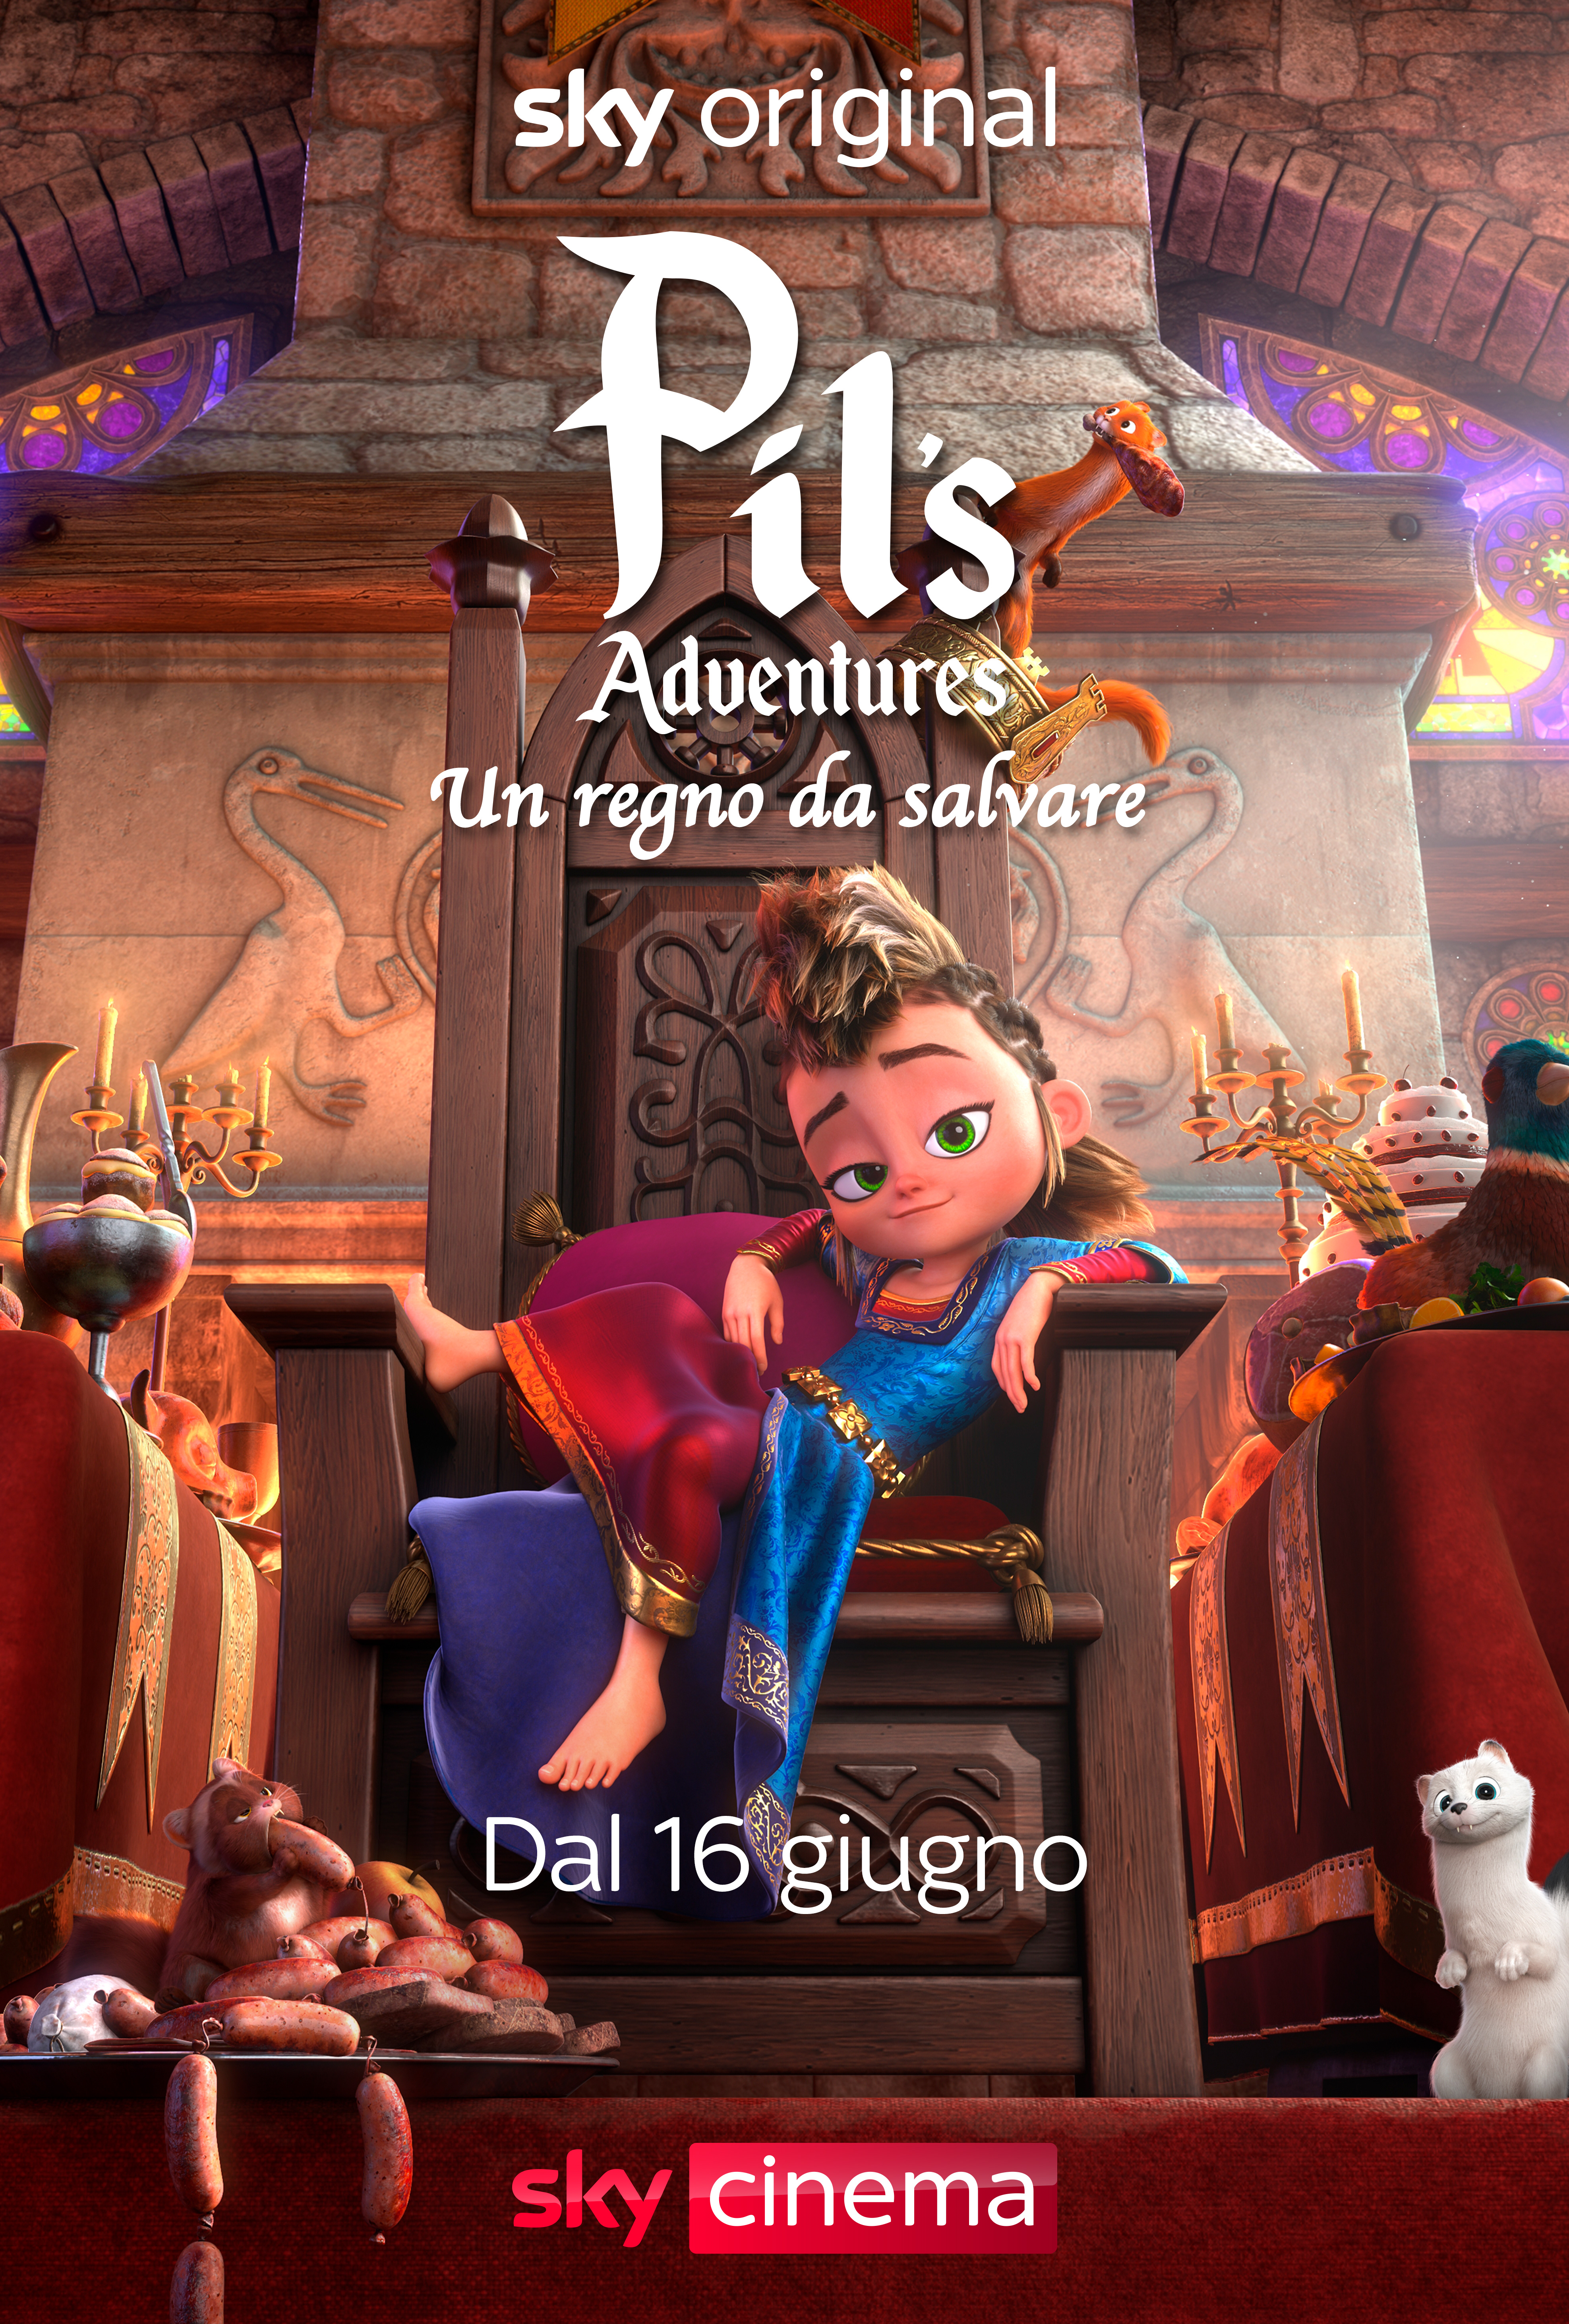 il poster di pil's adventures mostra la protagonista spaparanzata sul trono - nerdface